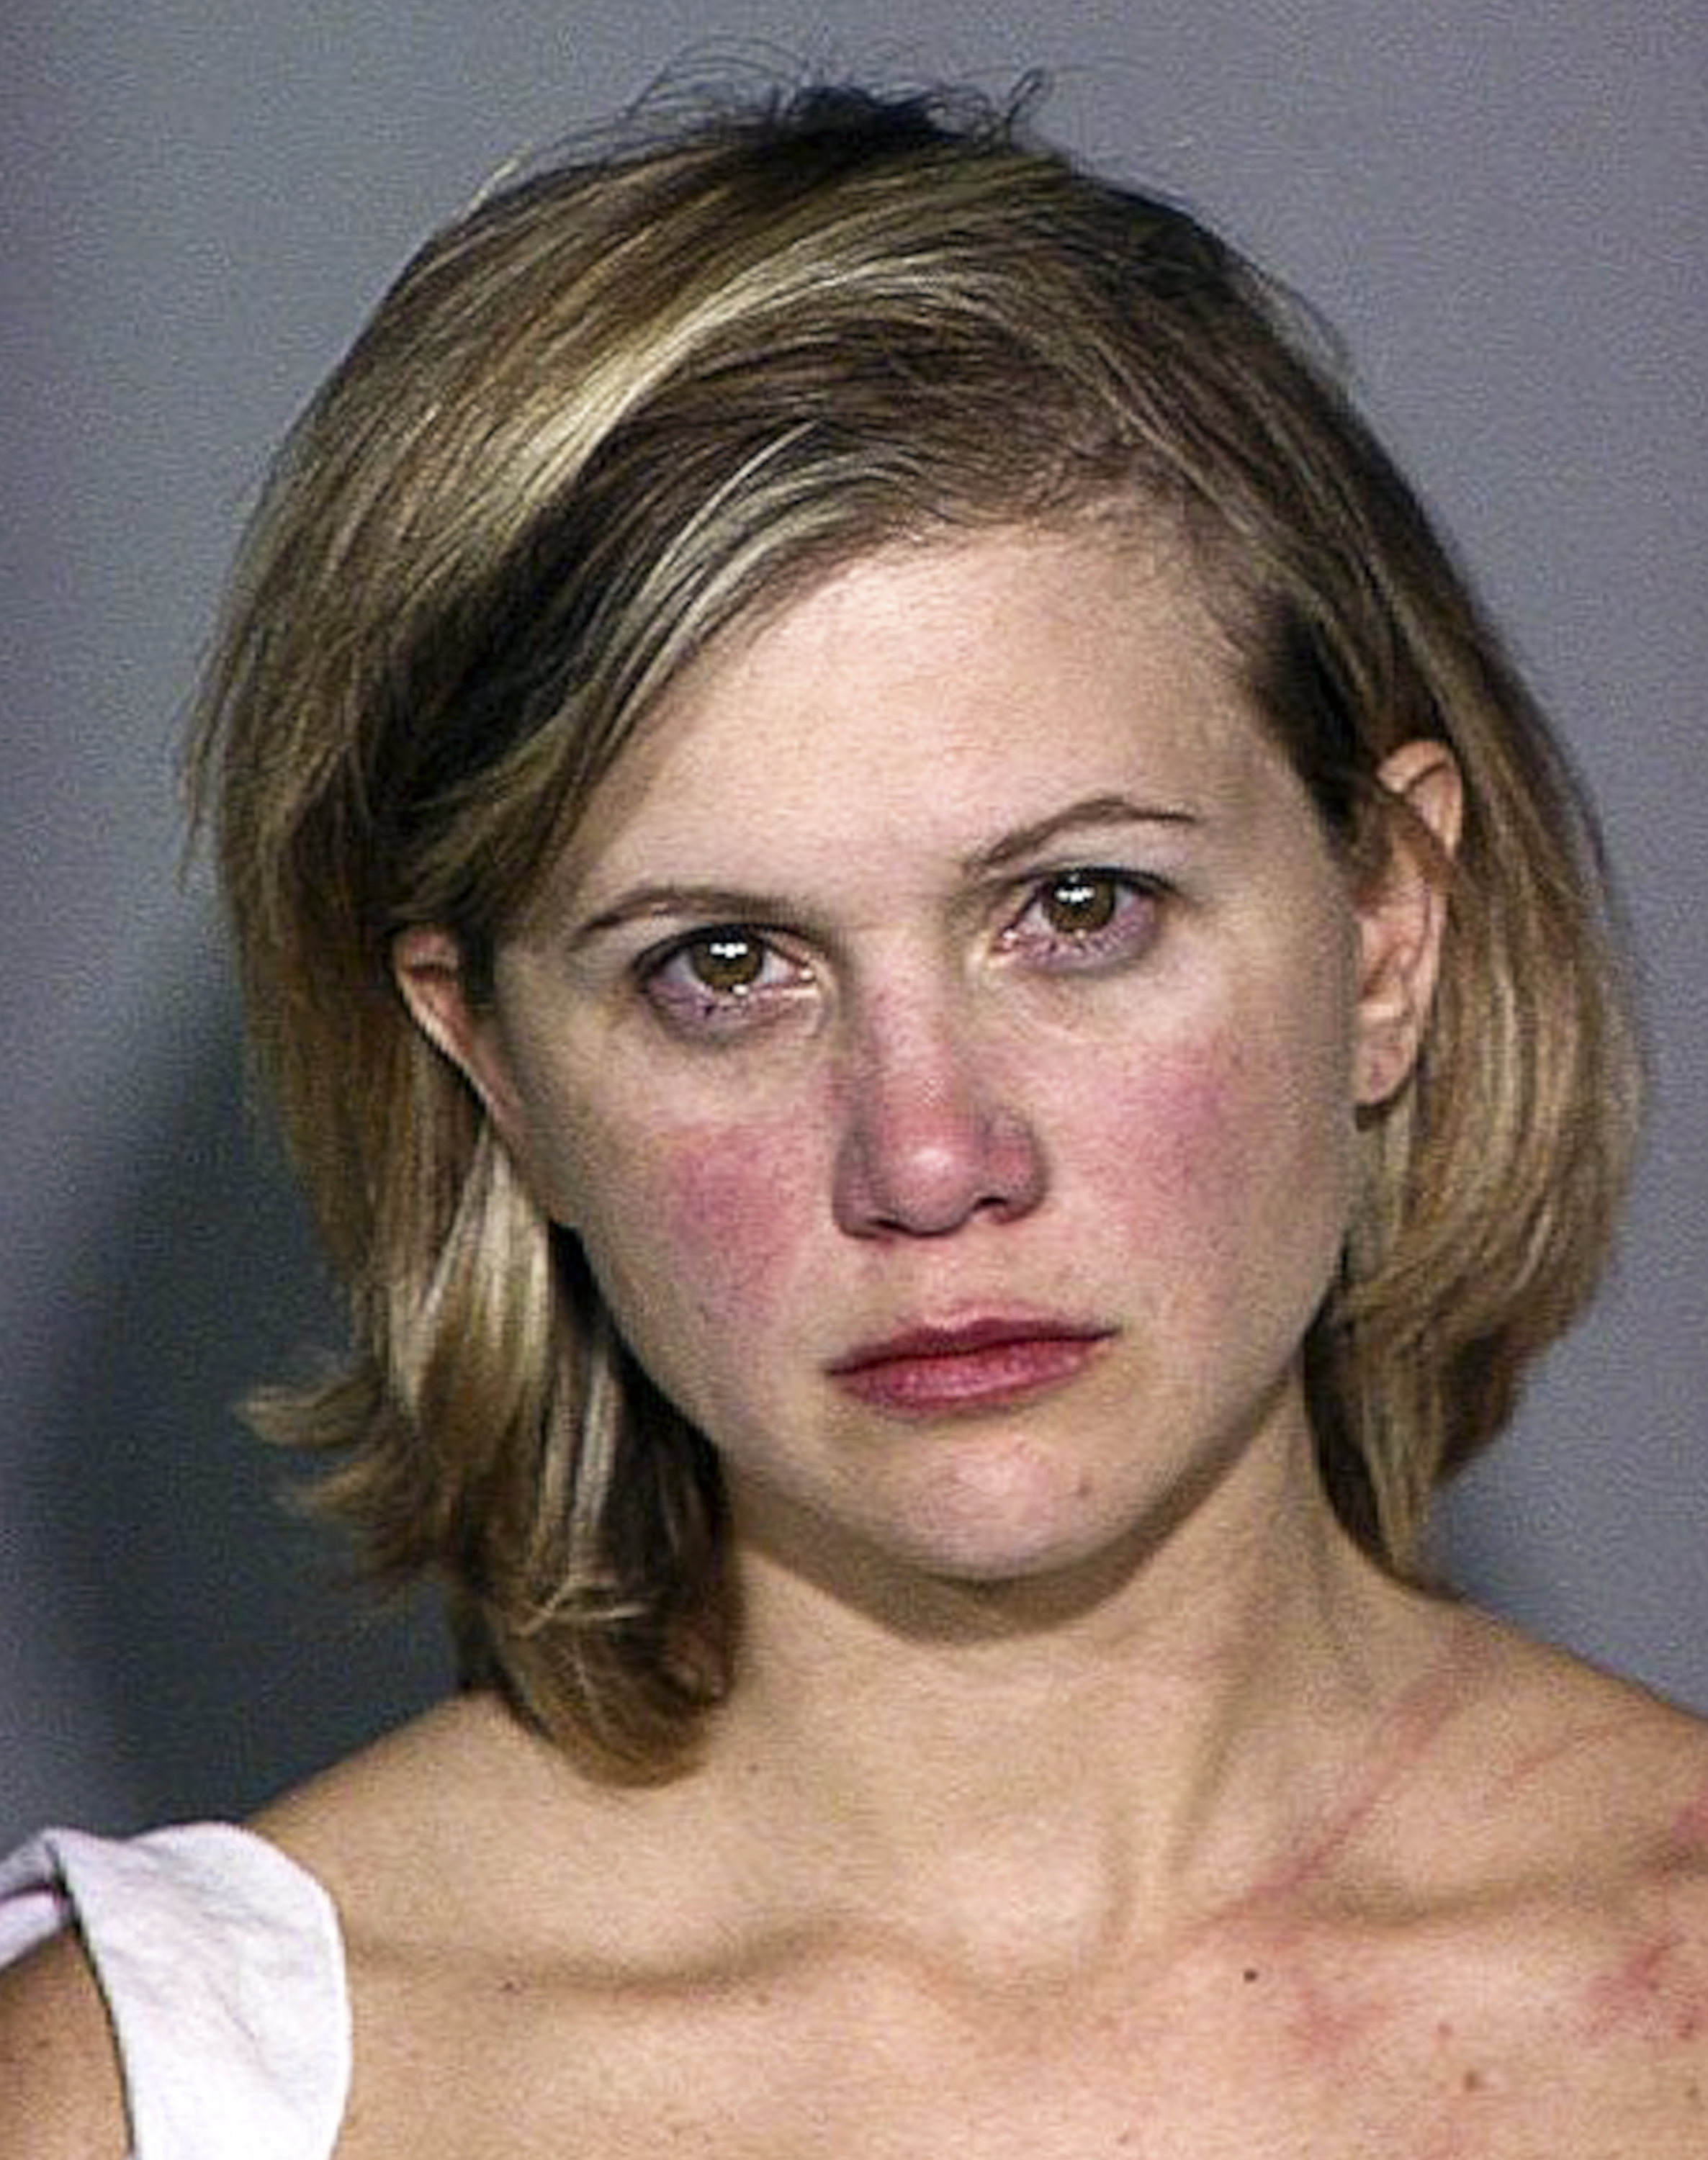 Tracey Gold en una foto policial tras su detención por conducir bajo los efectos del alcohol el 3 de septiembre de 2004, en Ventura, California. | Fuente: Getty Images